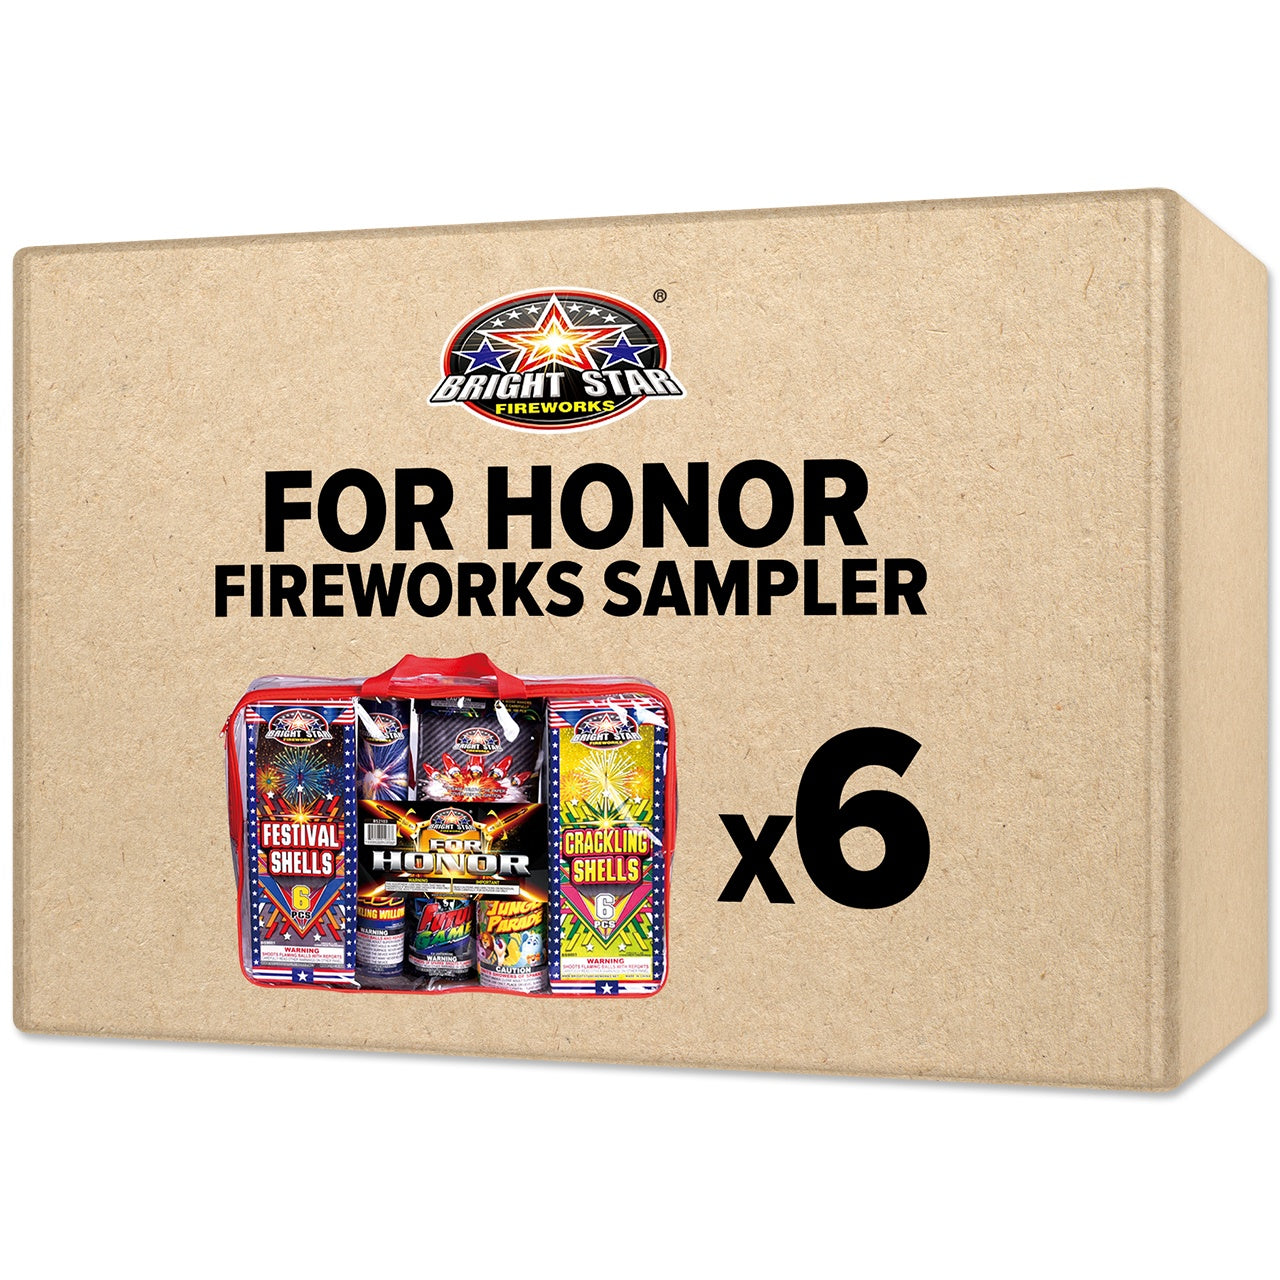 For Honor Fireworks Sampler